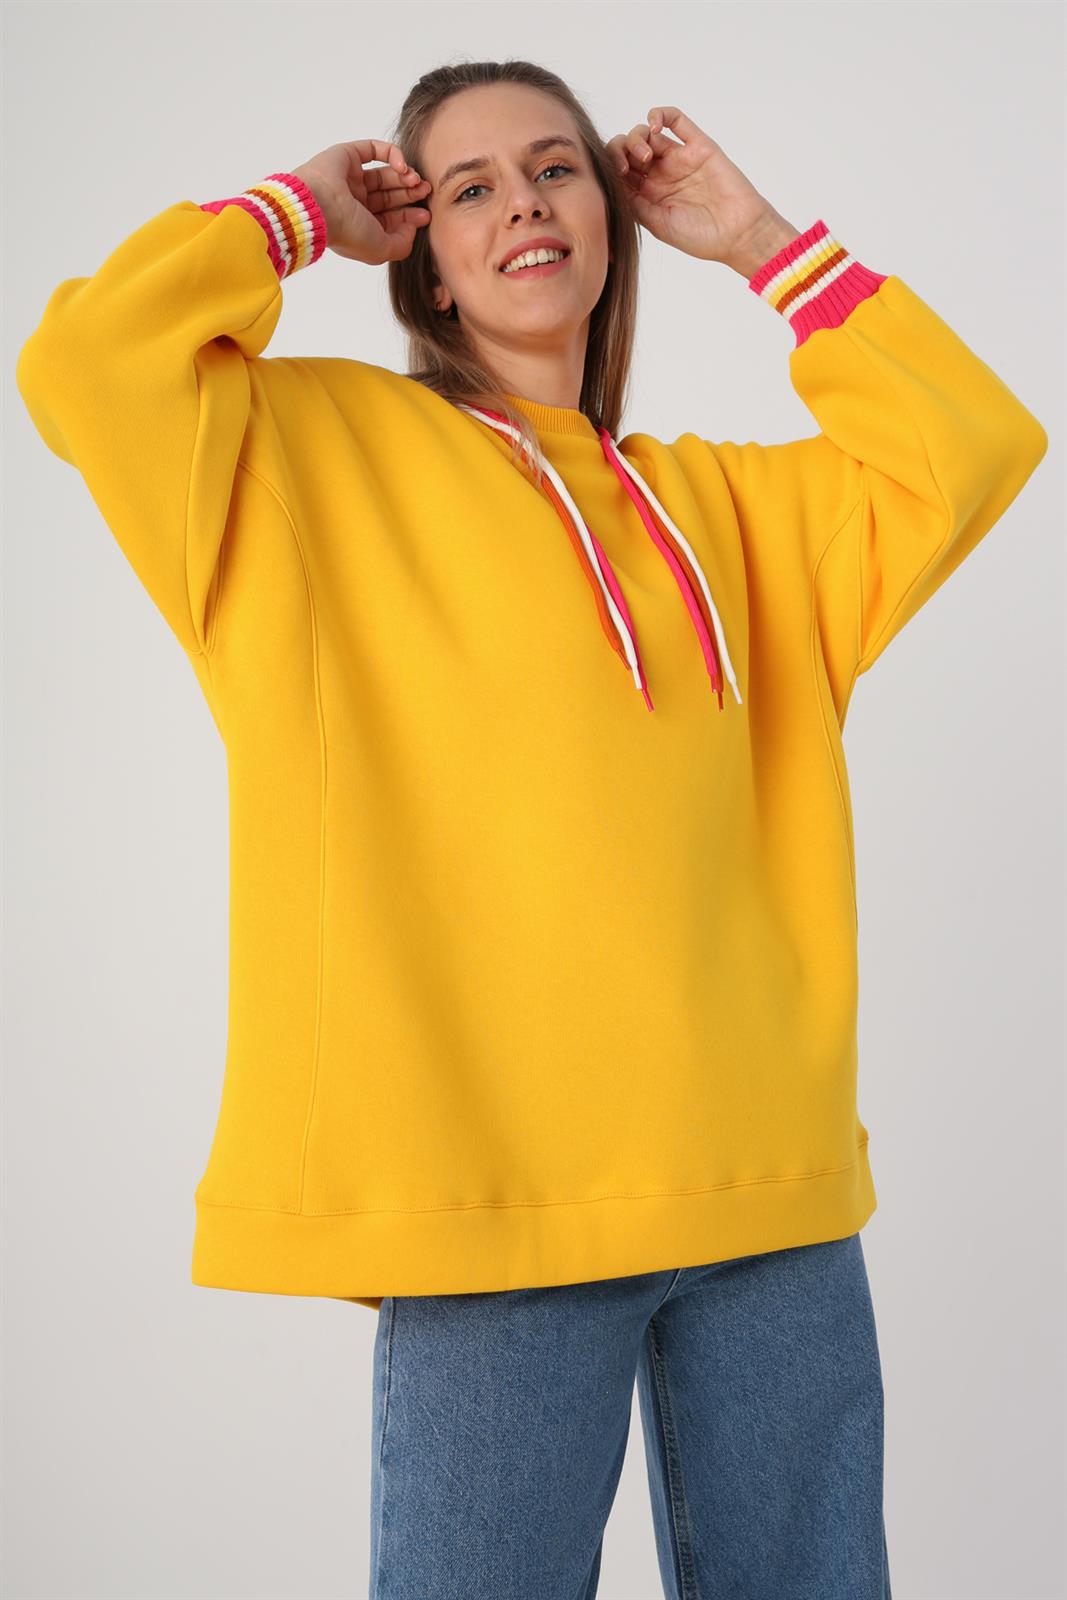 Allday Koyu Sarı Oversize 3 Renk Kordonlu Triko Bantlı Sweatshirt